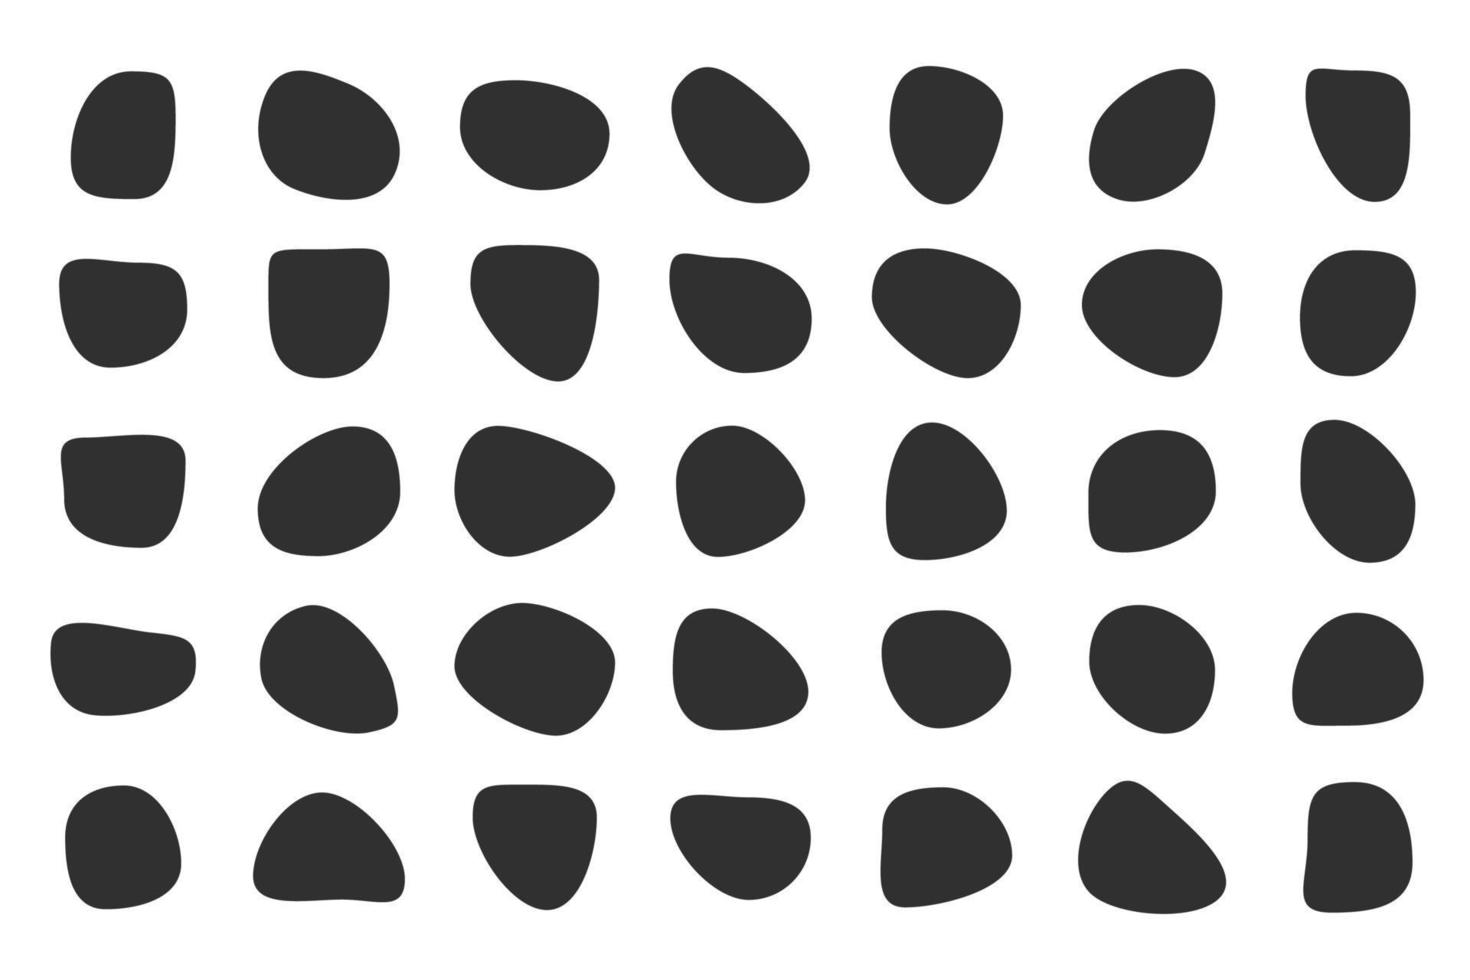 vektor flytande skuggor slumpmässiga former. svart kub droppar enkla former.